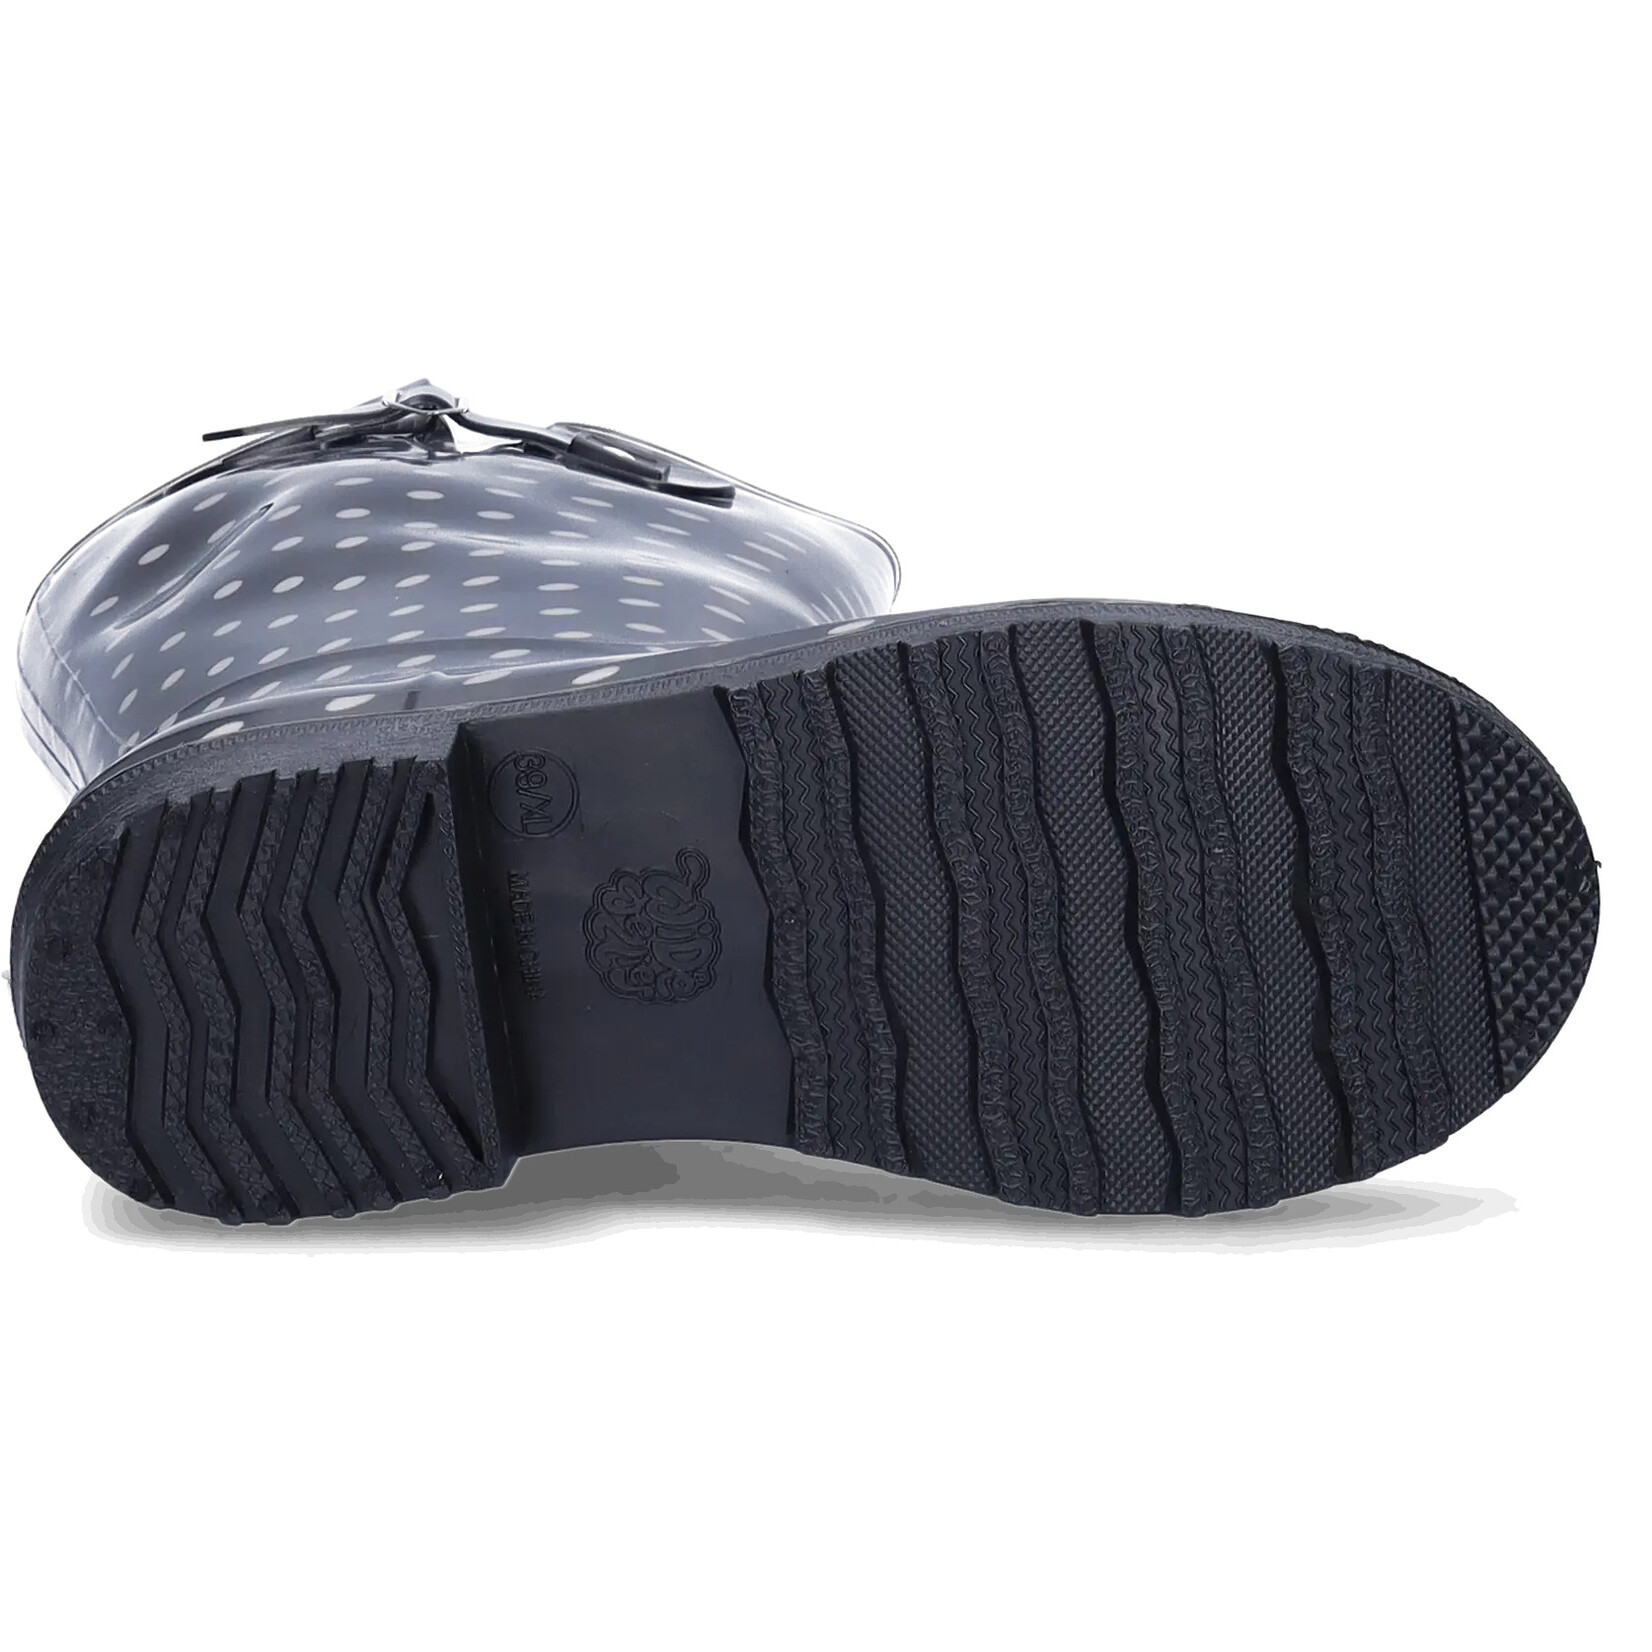 JJ Footwear Wellies - Schwarz/weiße Polka Dots.